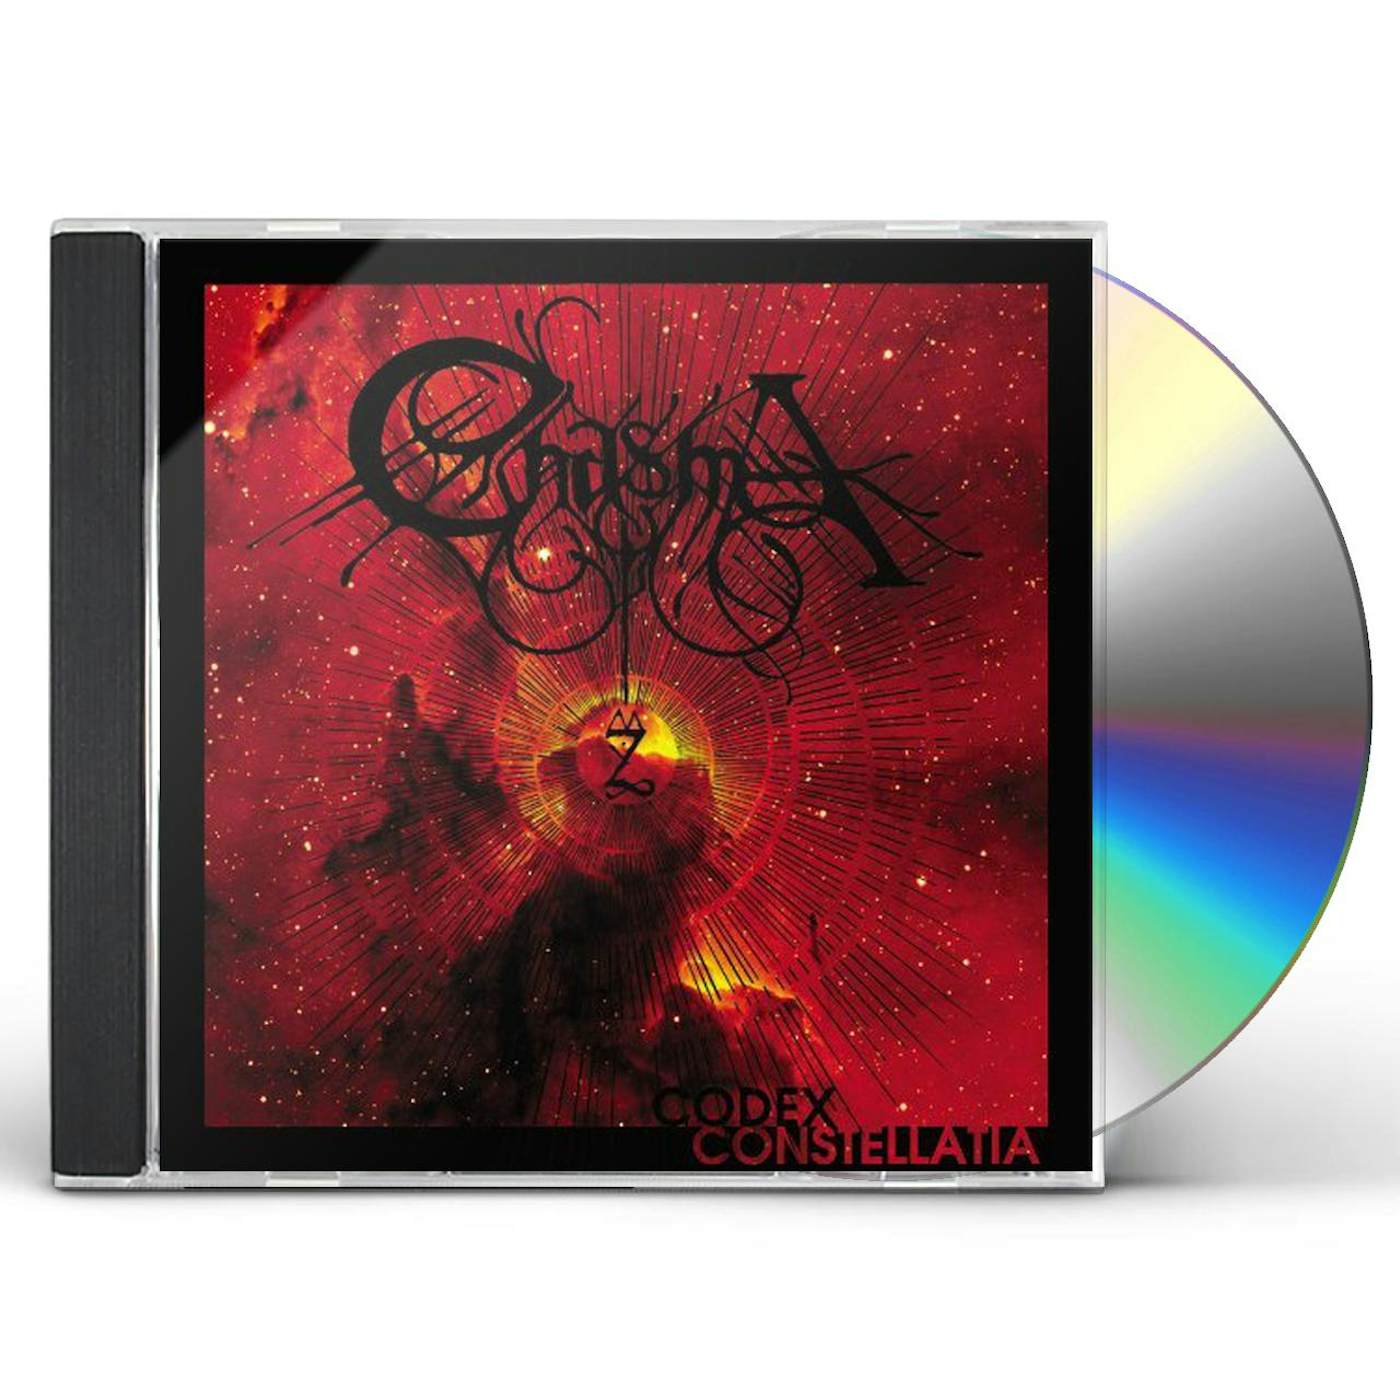 Chasma CODEX CONSTELLATIA CD